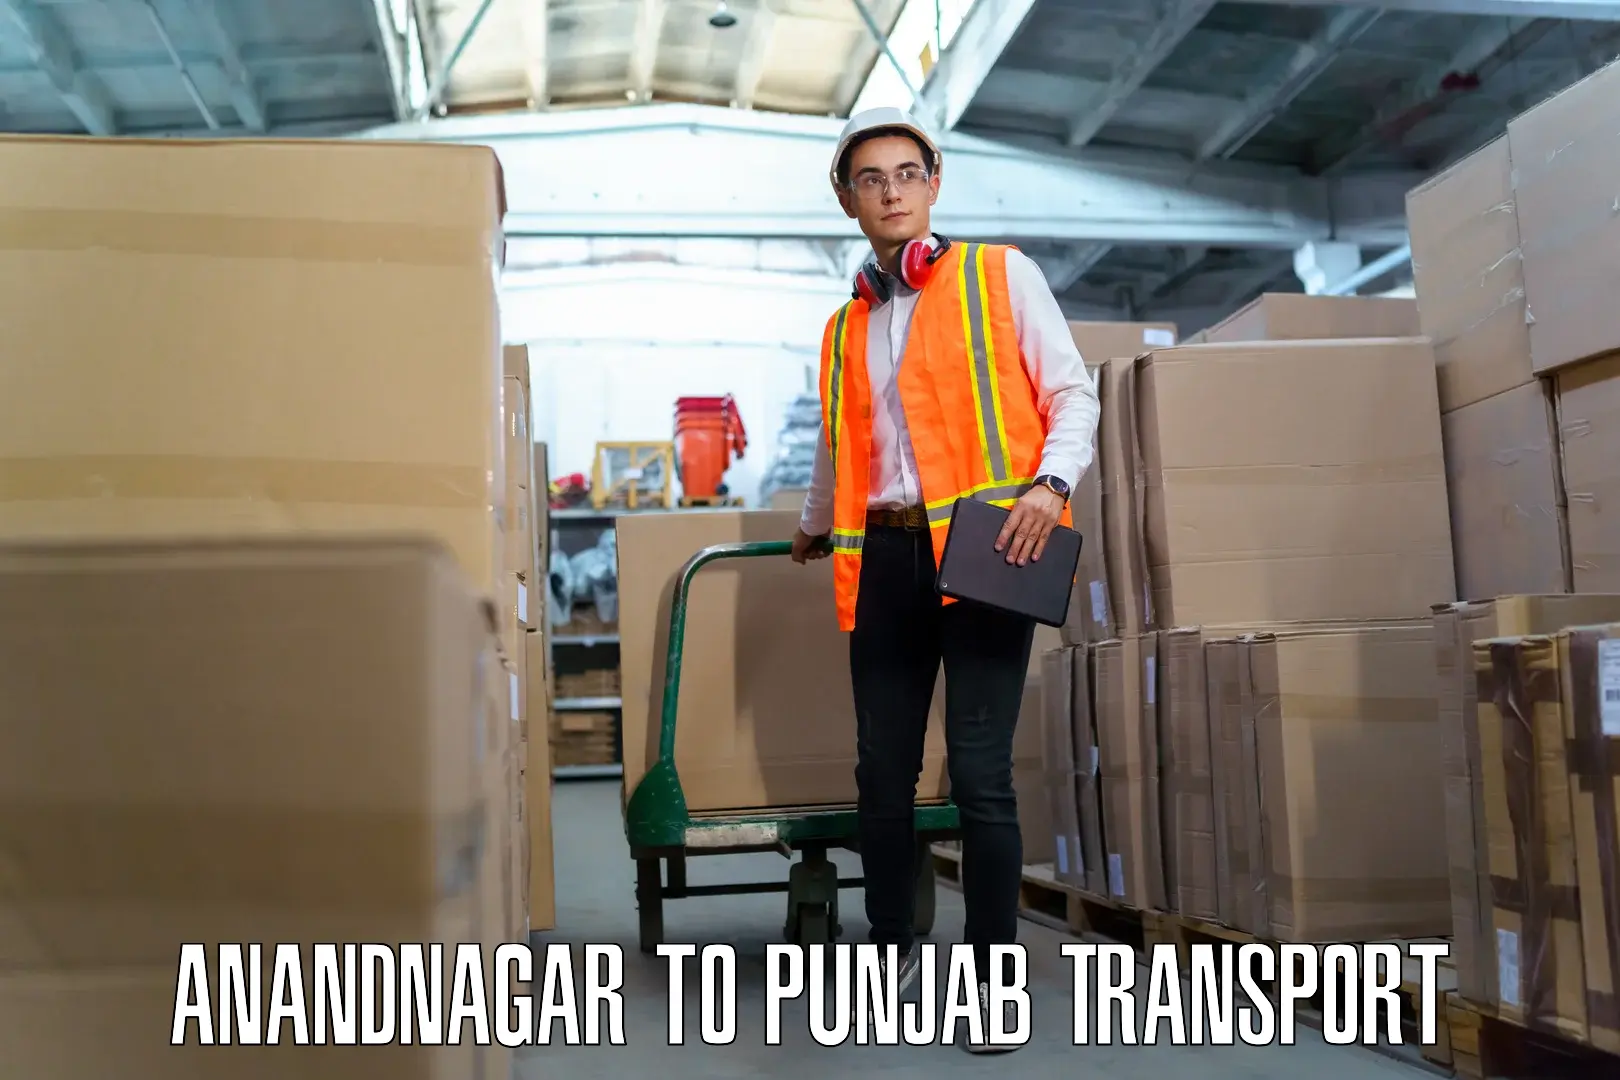 Pick up transport service Anandnagar to Amritsar